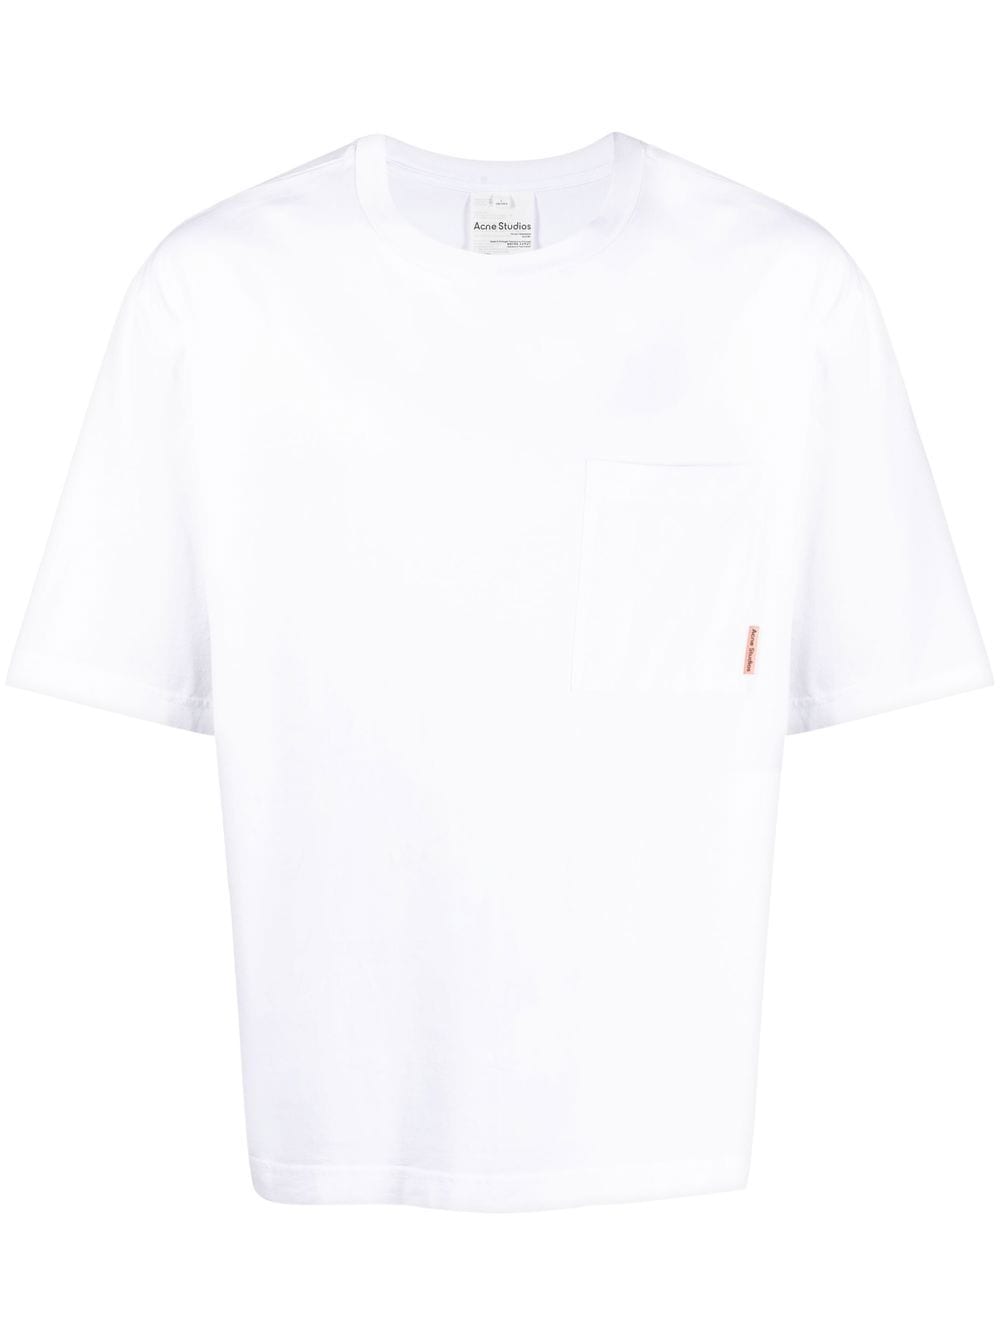 Acne Studios T-Shirt White - Lothaire